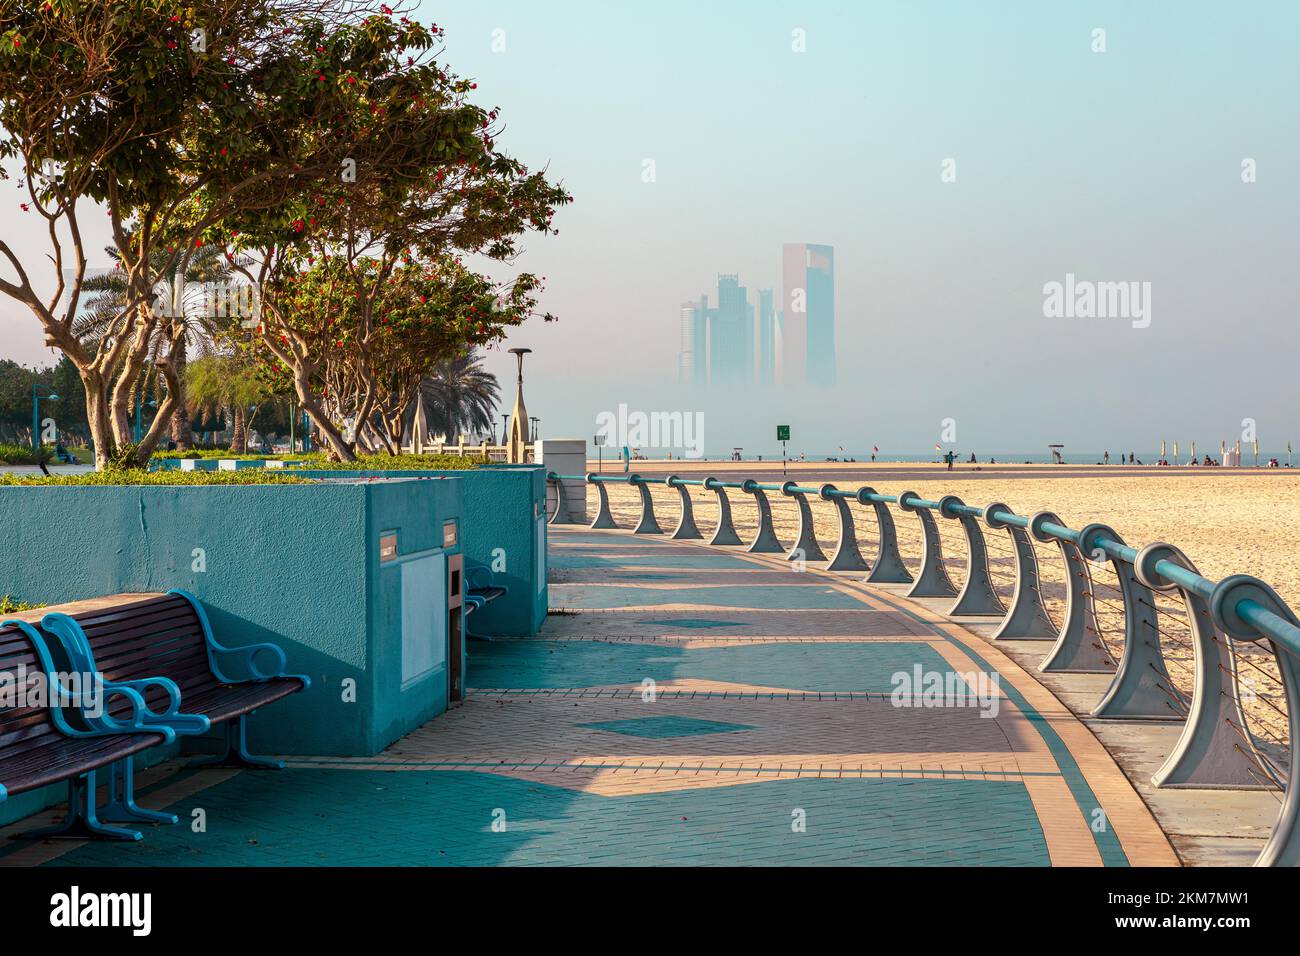 Ligne d'horizon d'Abu Dhabi depuis la Corniche. Abu Dhabi, gratte-ciels modernes et Landmark. Promenade à Abu Dhabi. Émirats arabes Unis, Moyen-Orient. Banque D'Images